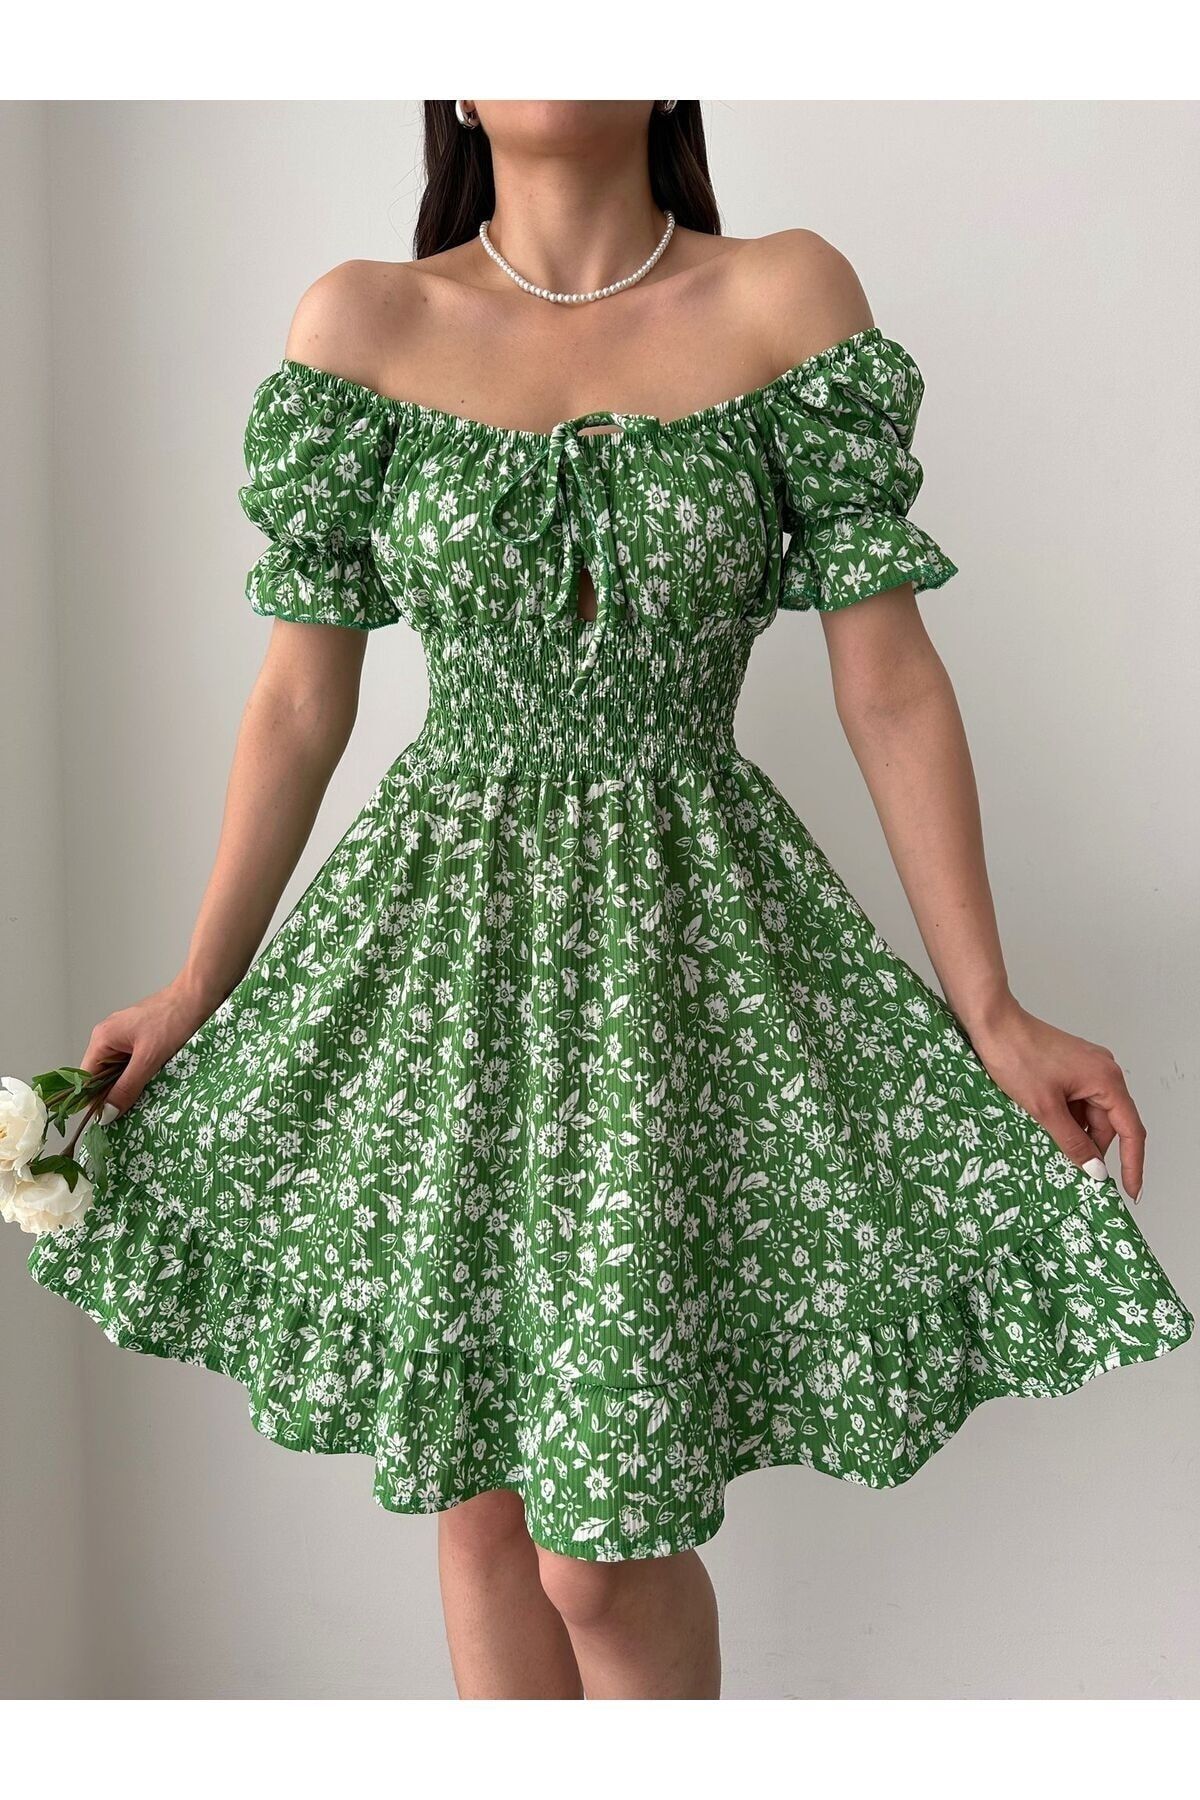 Sunlit Collections Kadın Yeşil Desenli Mini Göğüs Dekolteli Gipeli Bürümcük Yazlık Elbise